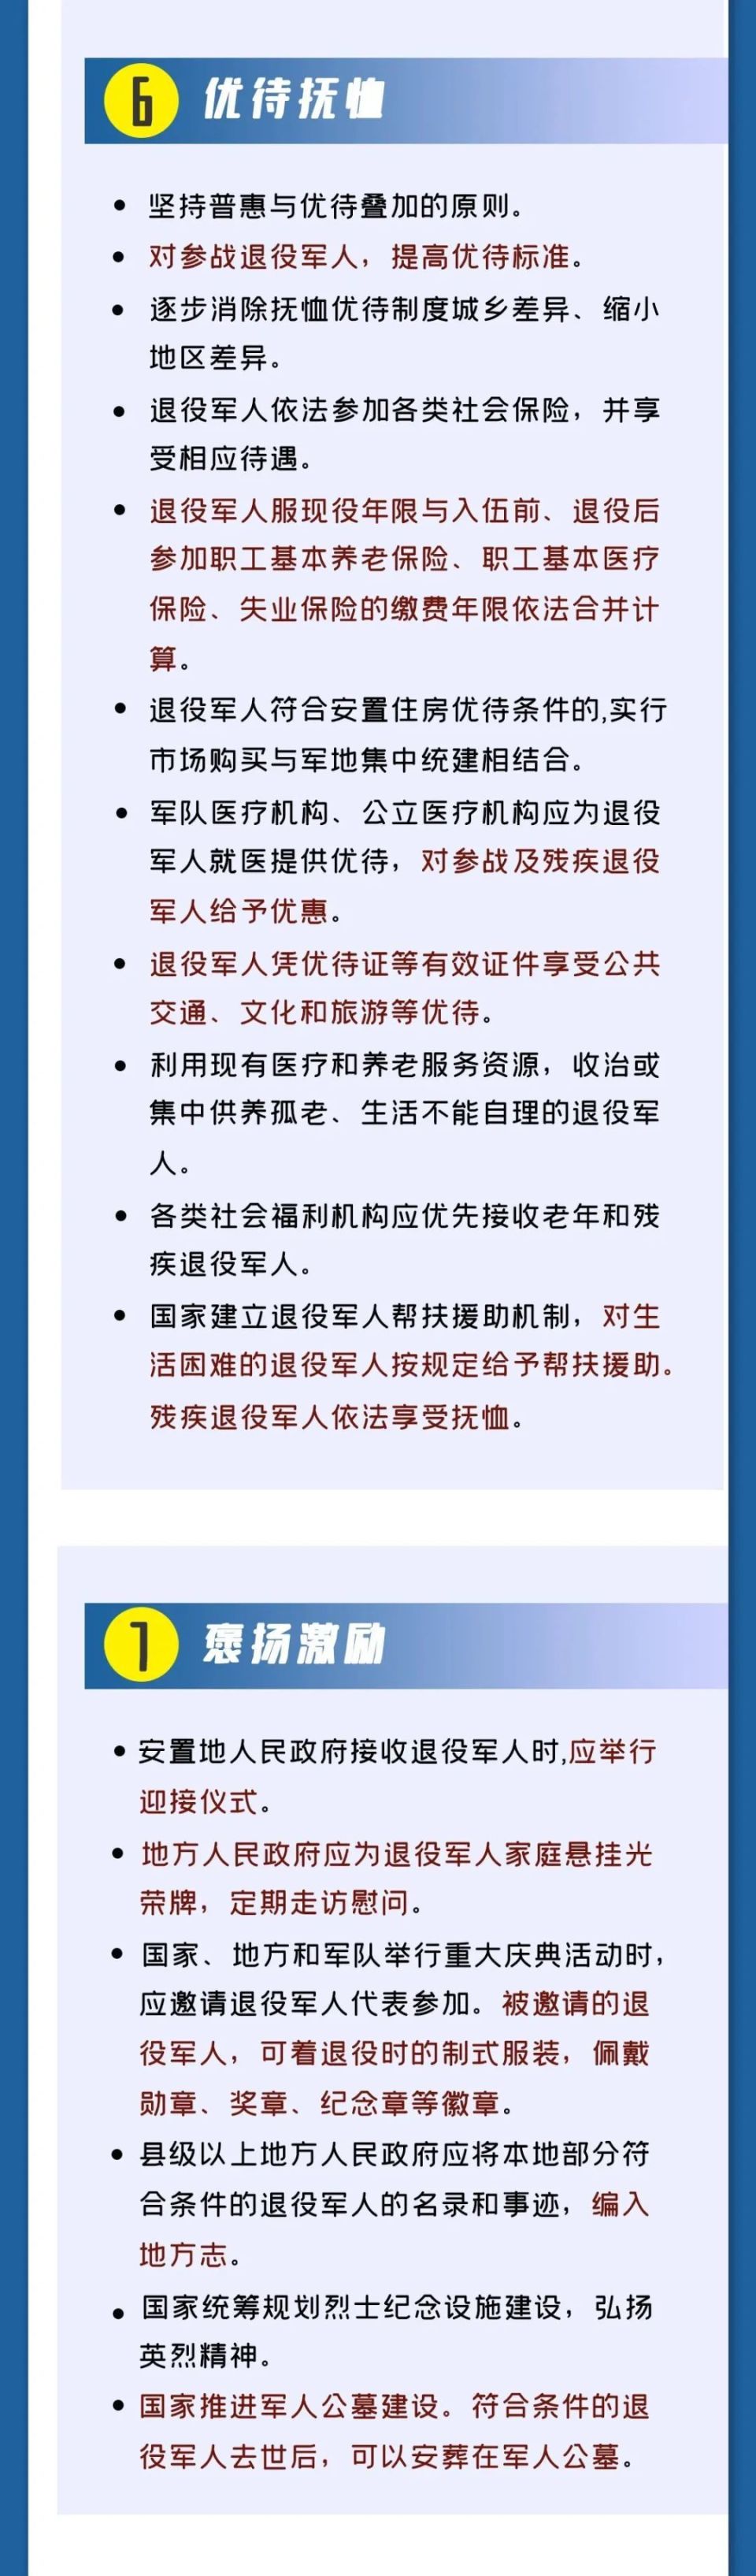 【政策法规】一图读懂《中华人民共和国退役军人保障法》